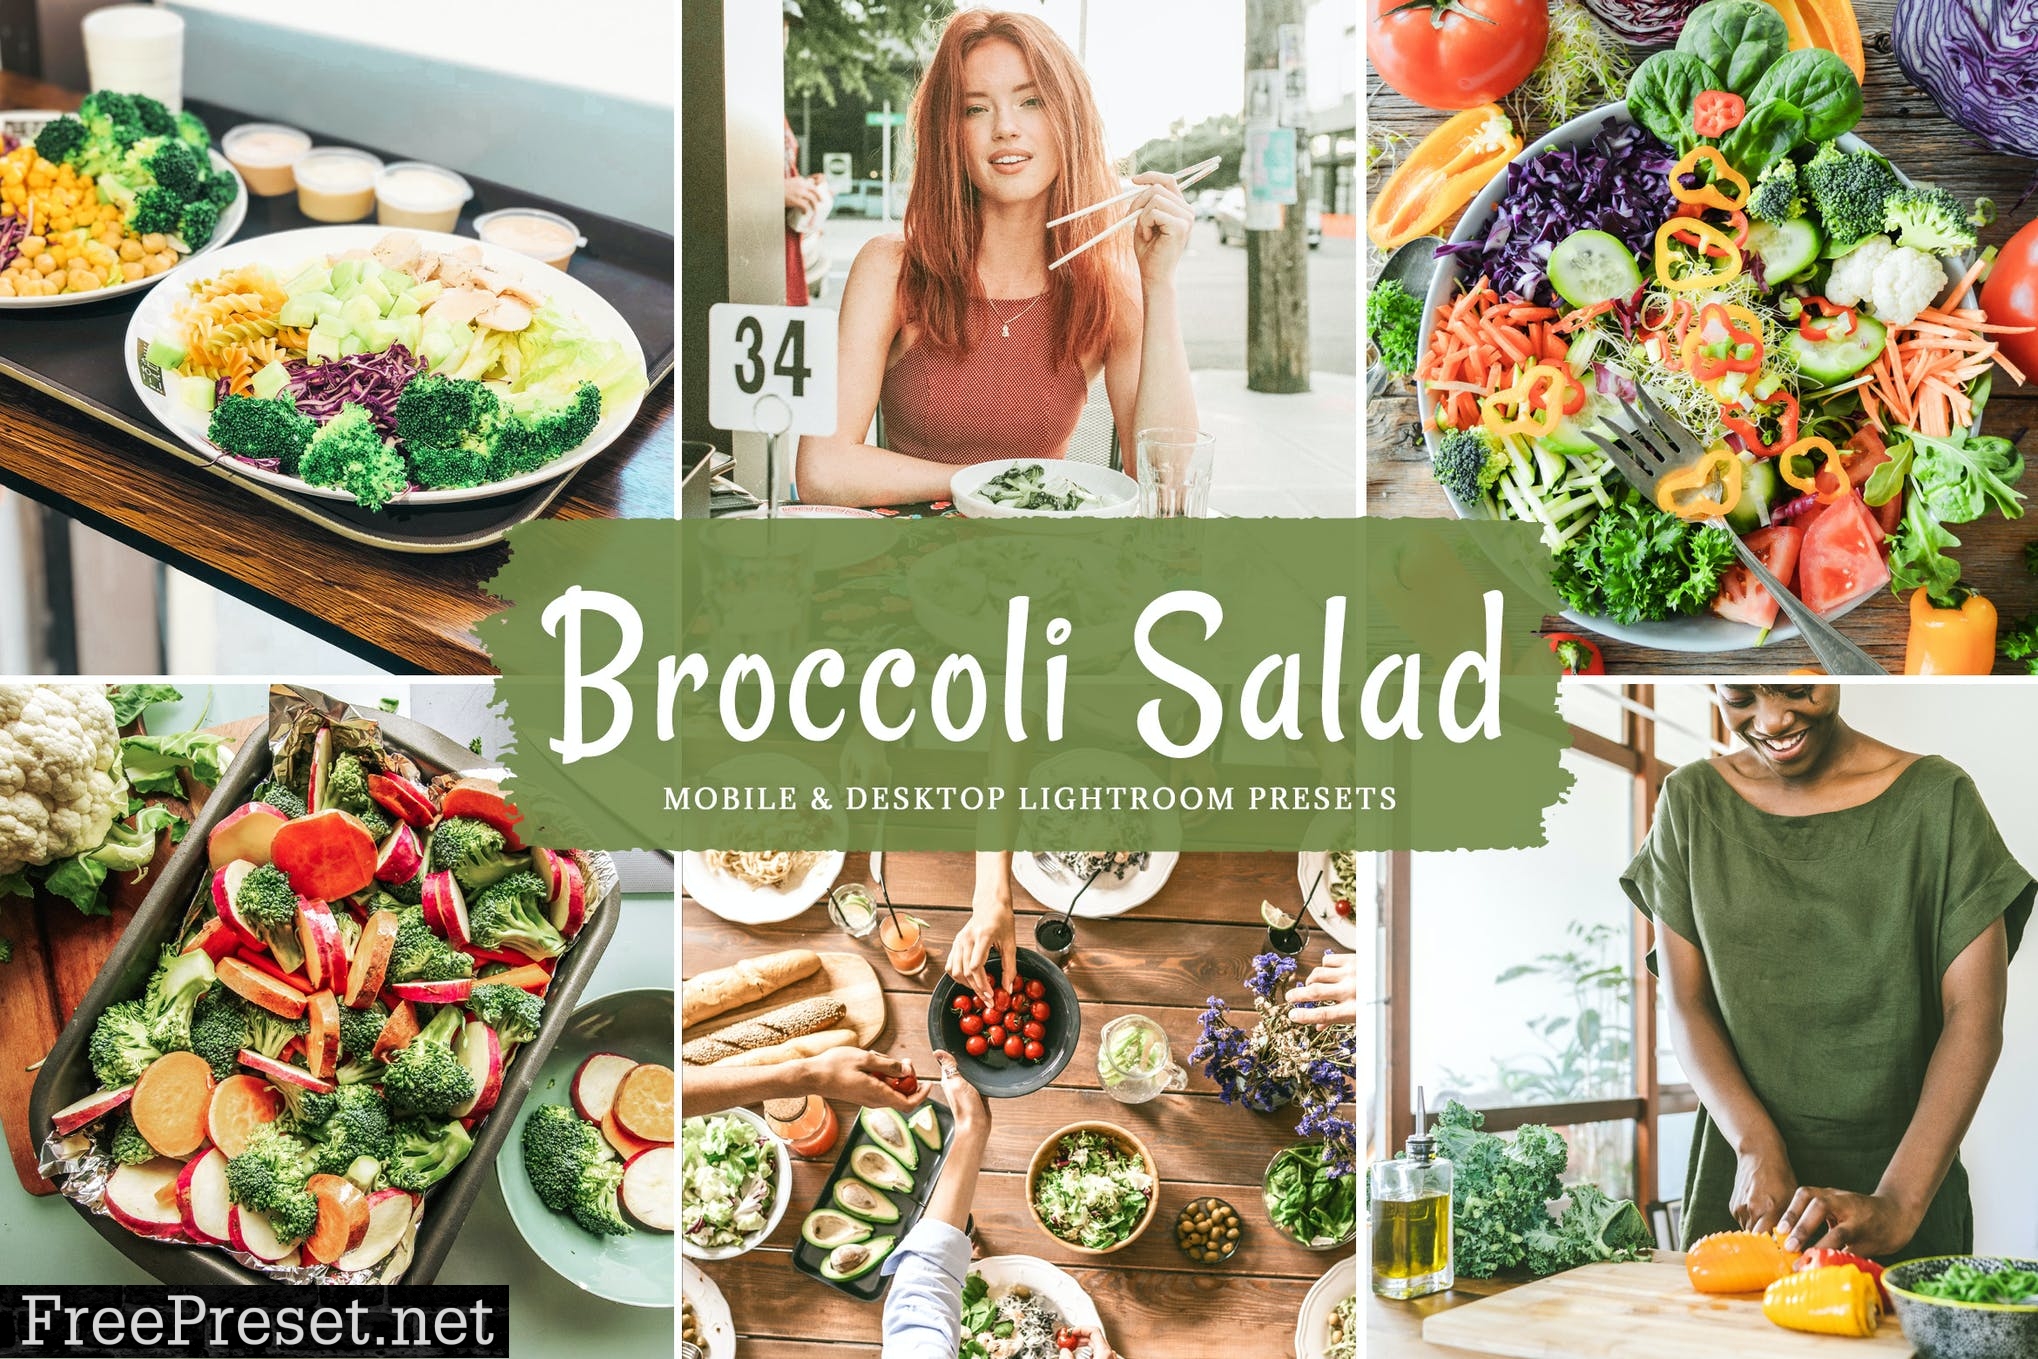 Broccoli Salad Mobile & Desktop Lightroom Presets